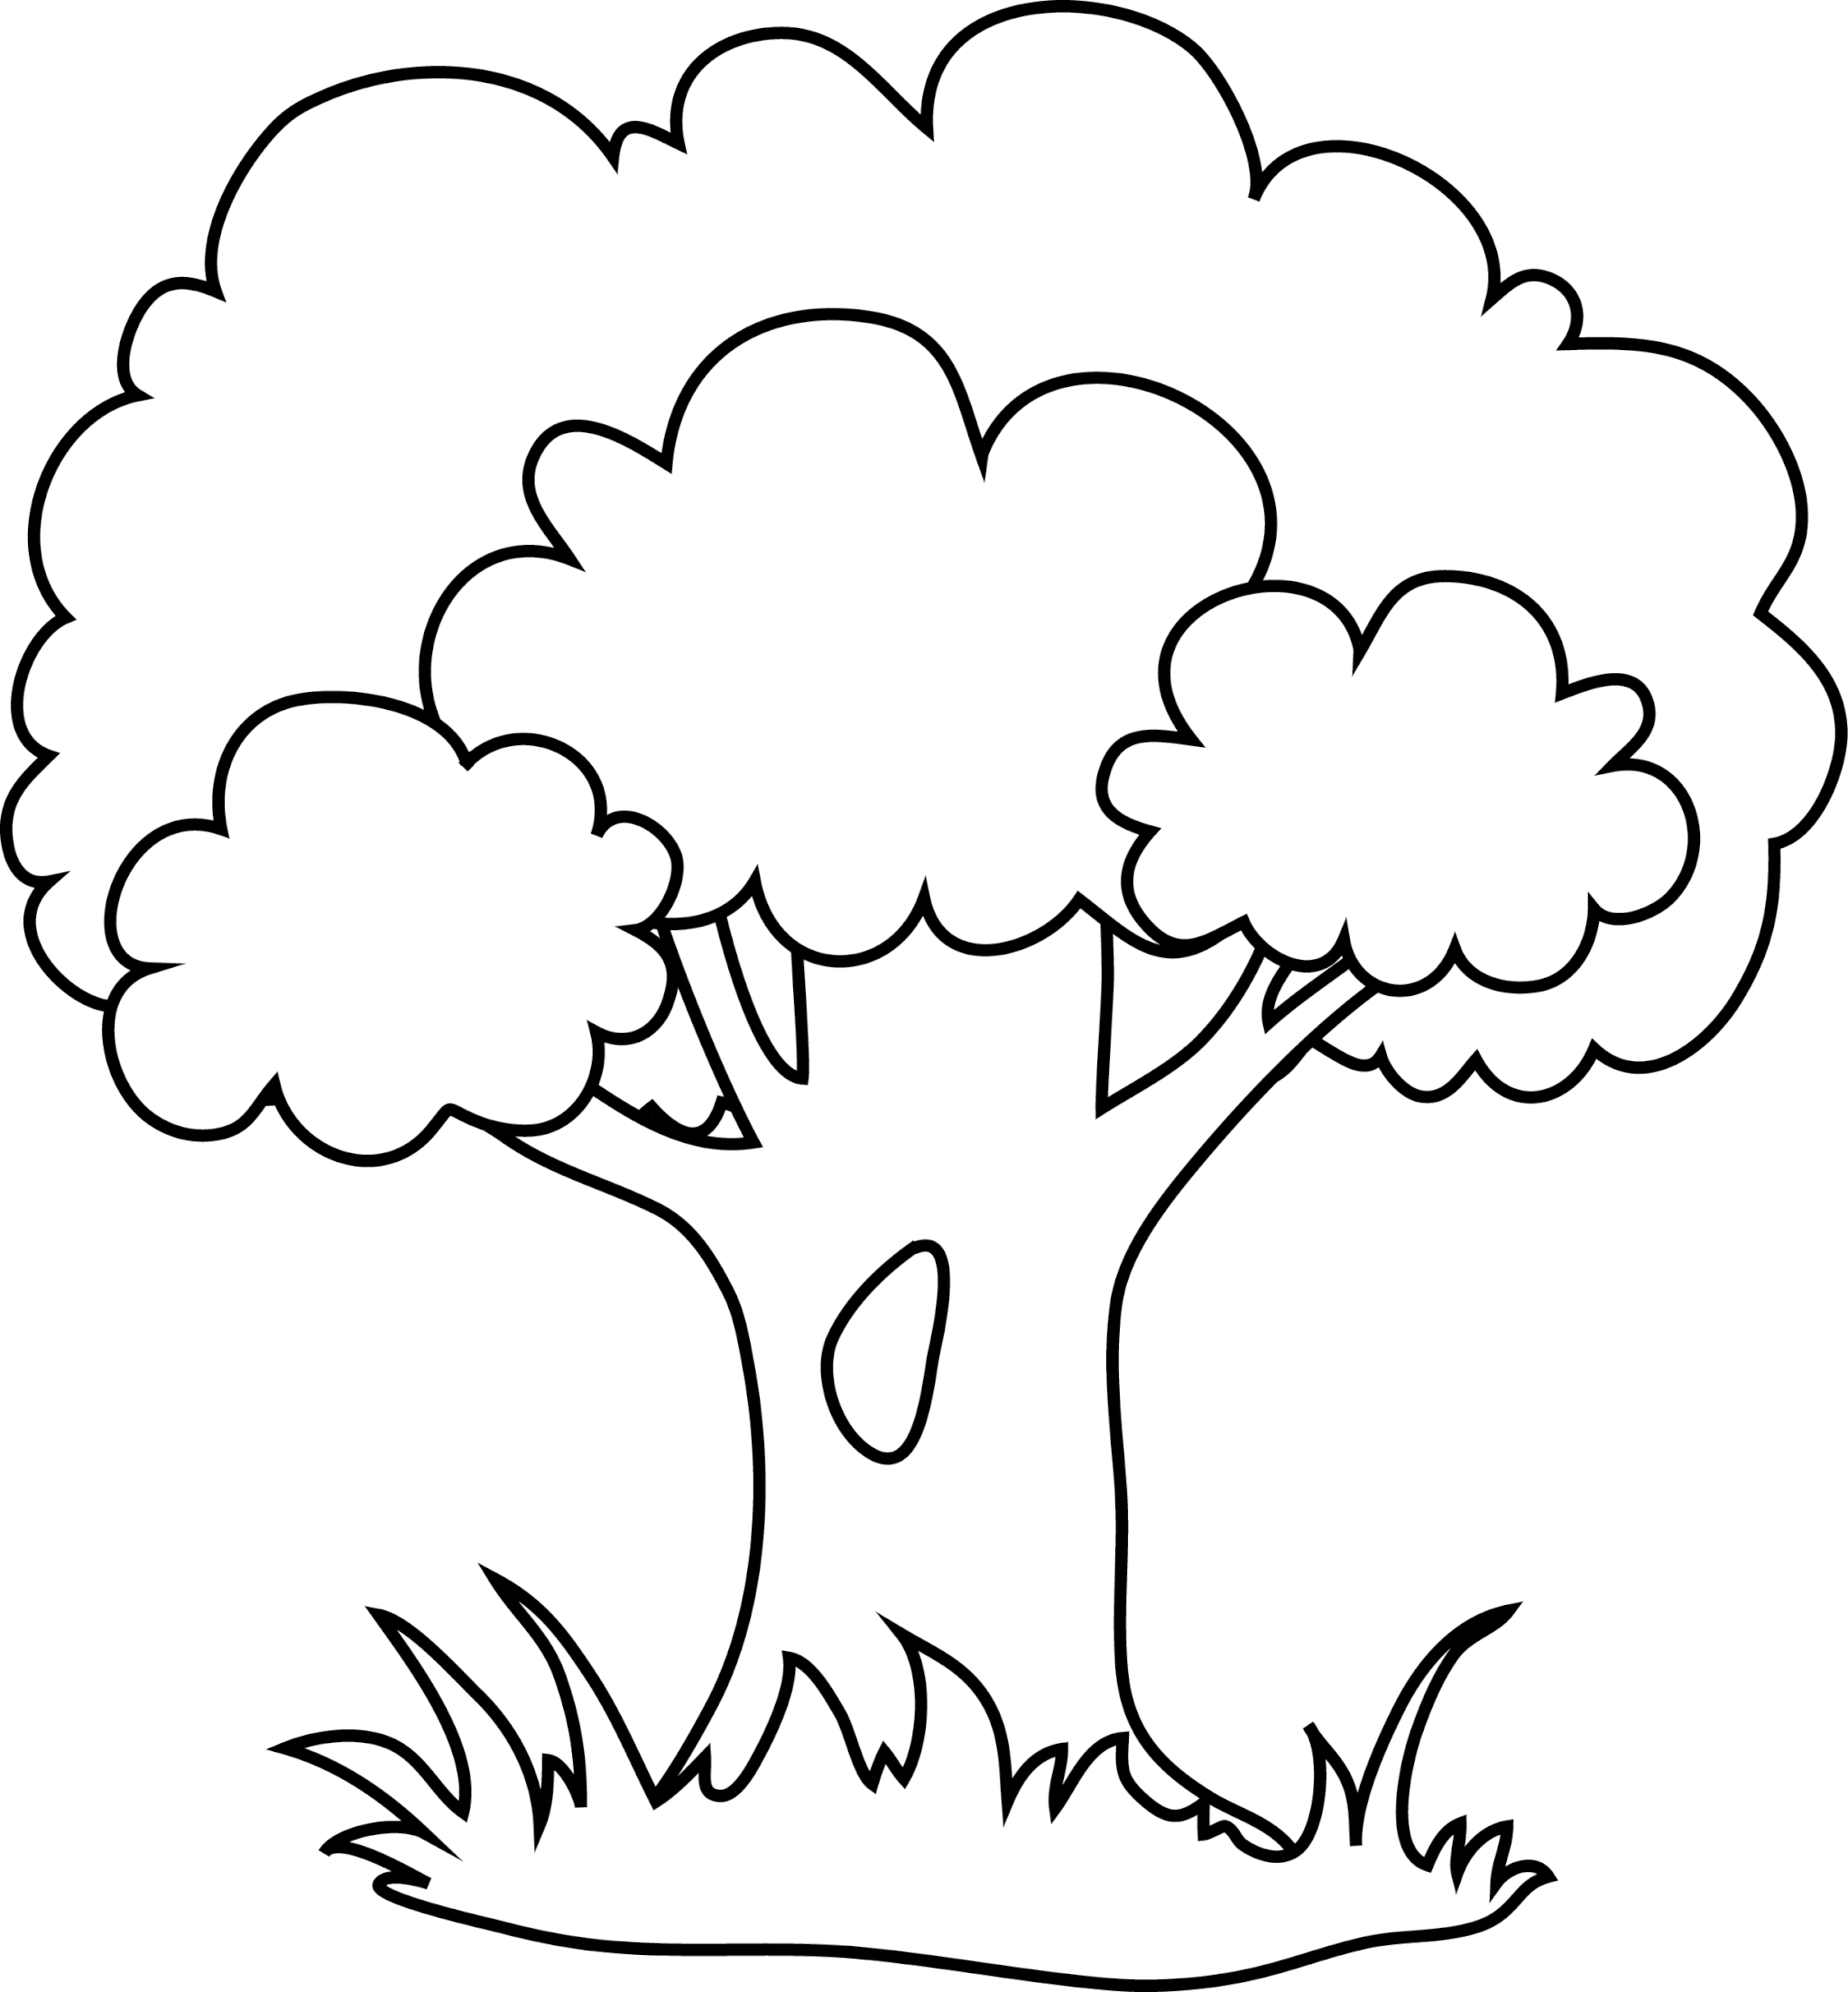 Аппликация дерево шаблон распечатать. Дерево раскраска. Дерево раскраска для детей. Дерево раскраска для малышей. Раскраска lthtdf для детей.